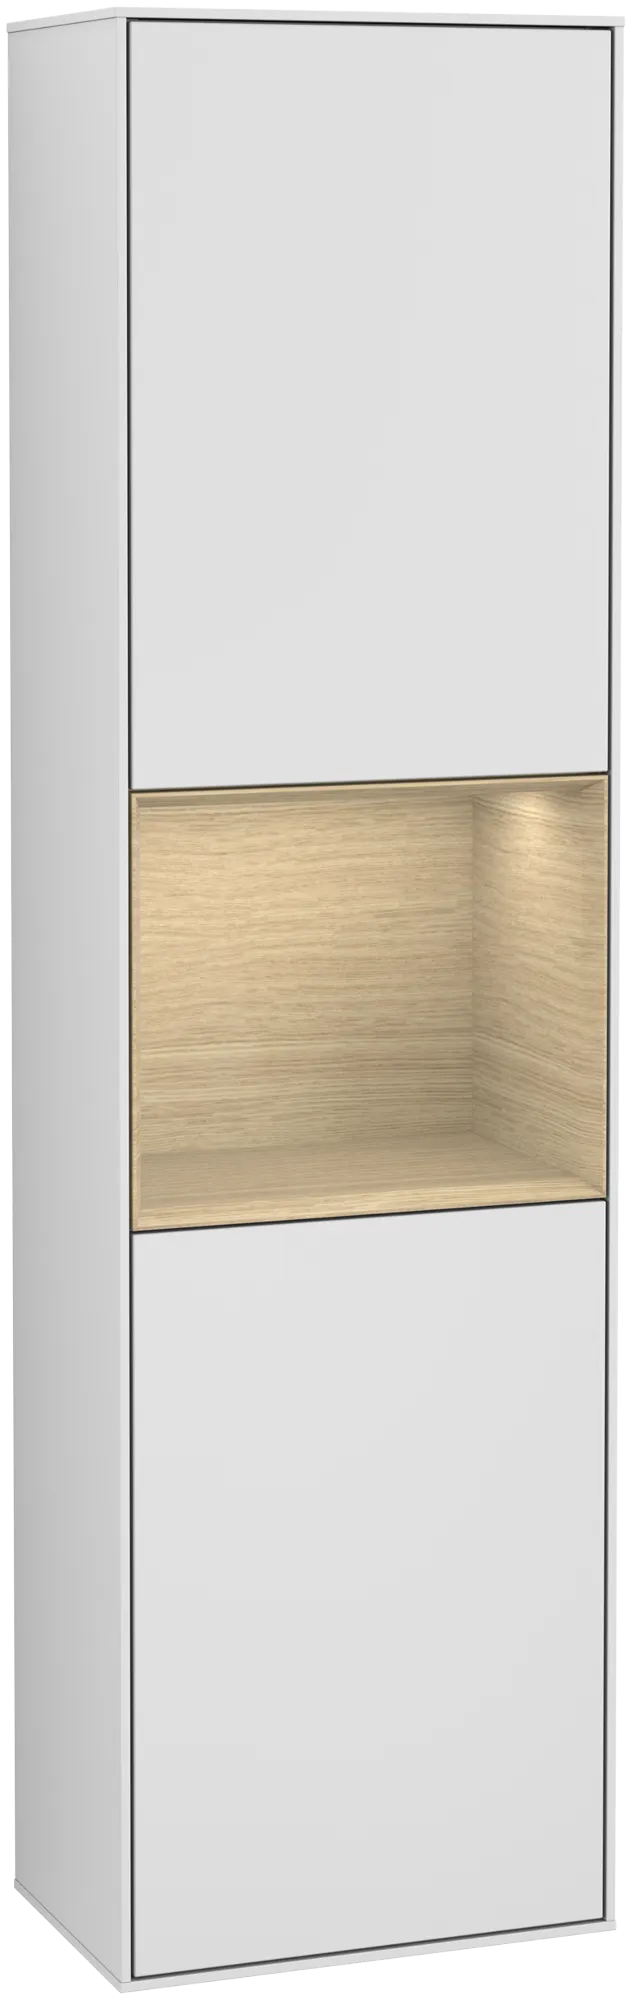 Bild von VILLEROY BOCH Finion Hochschrank, mit Beleuchtung, 2 Türen, 418 x 1516 x 270 mm, White Matt Lacquer / Oak Veneer #G460PCMT